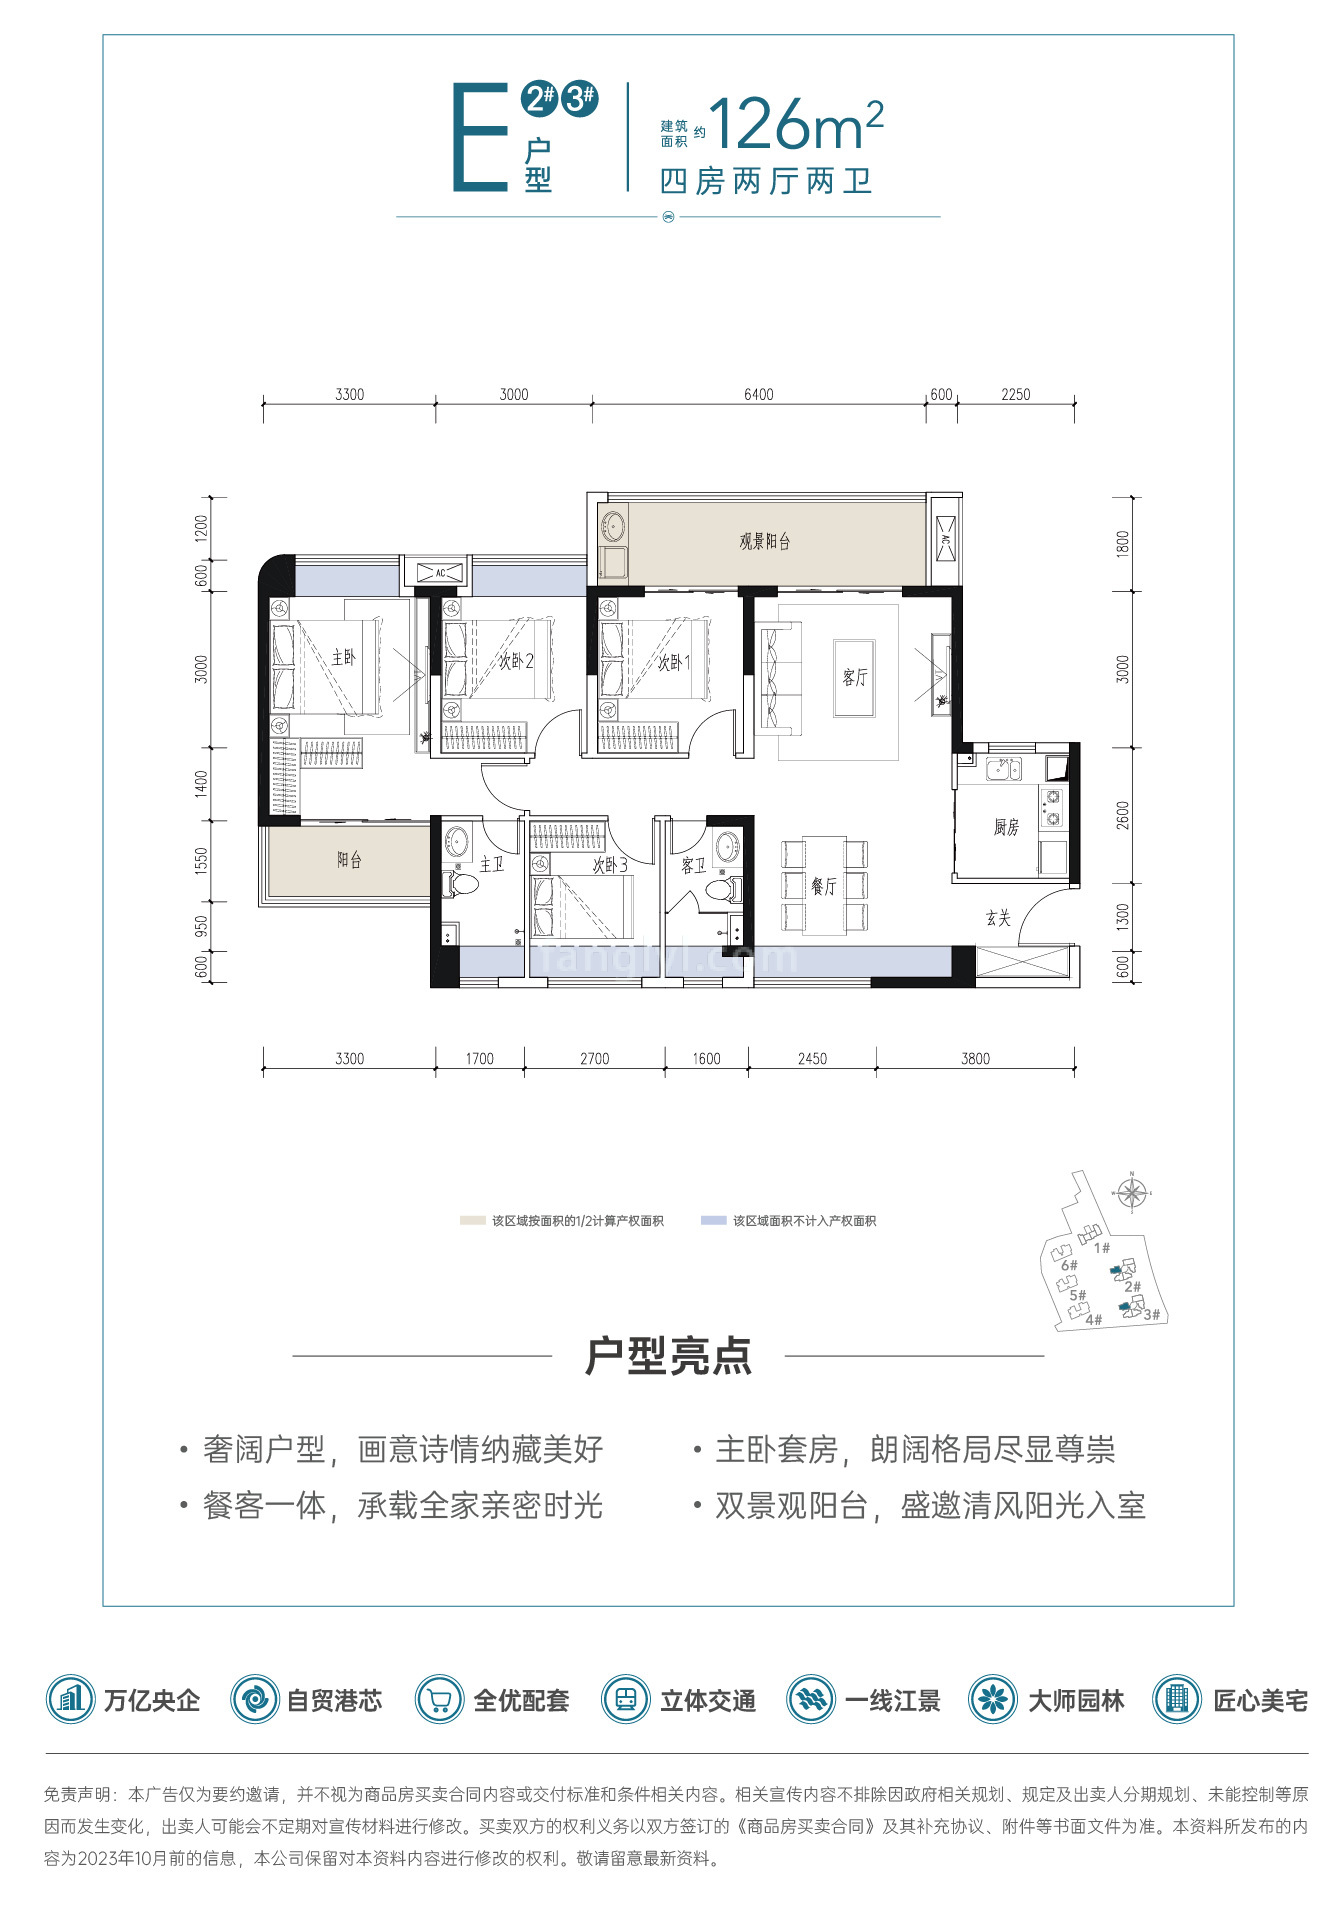 中国铁建·江语天著 高层 E户型建筑面积126㎡4房2厅2卫